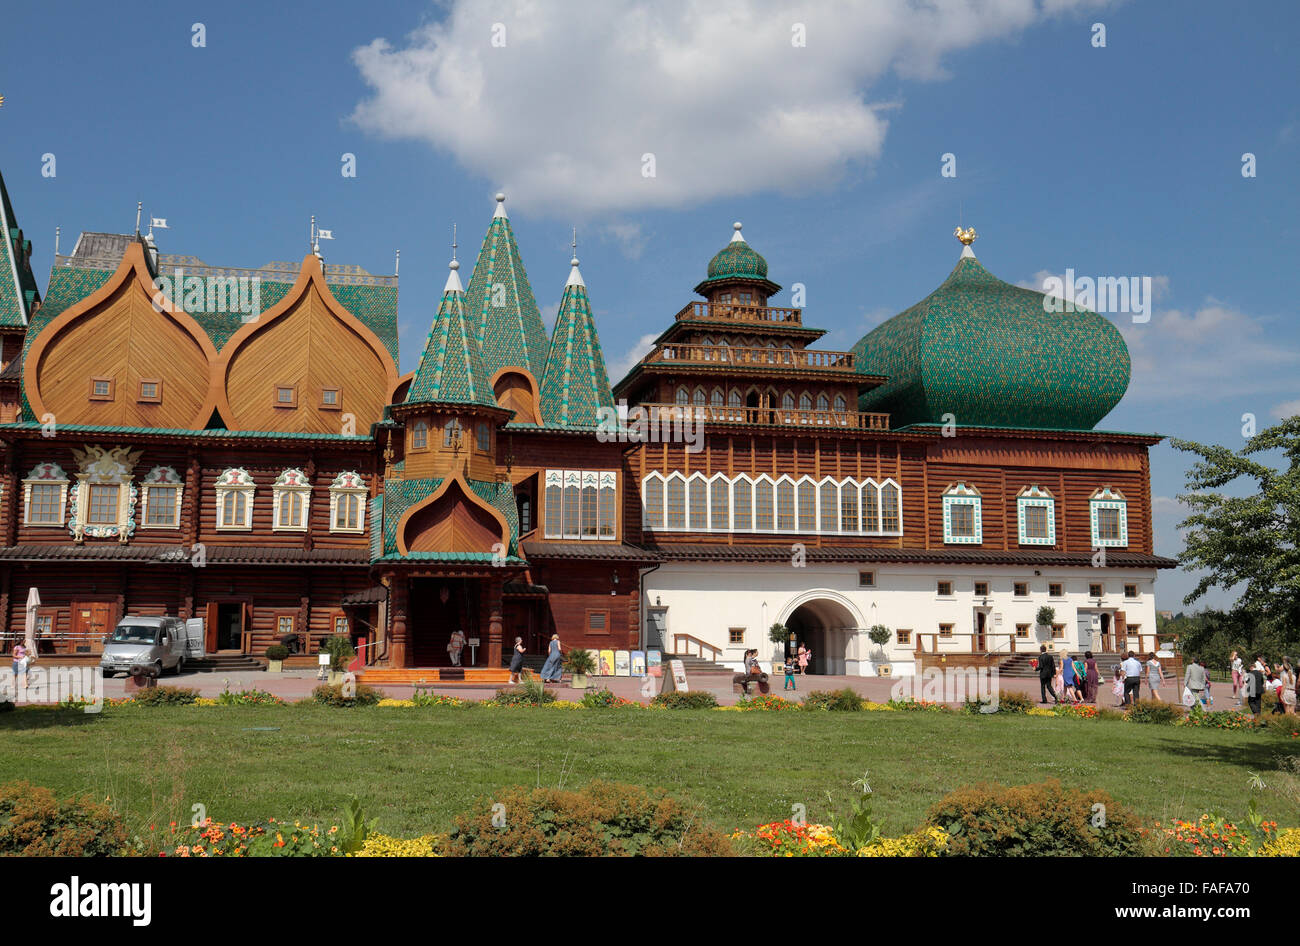 Il palazzo di legno o il Palazzo del Tsar Alexey Mikhailovich, Kolomenskoe, Mosca. Foto Stock